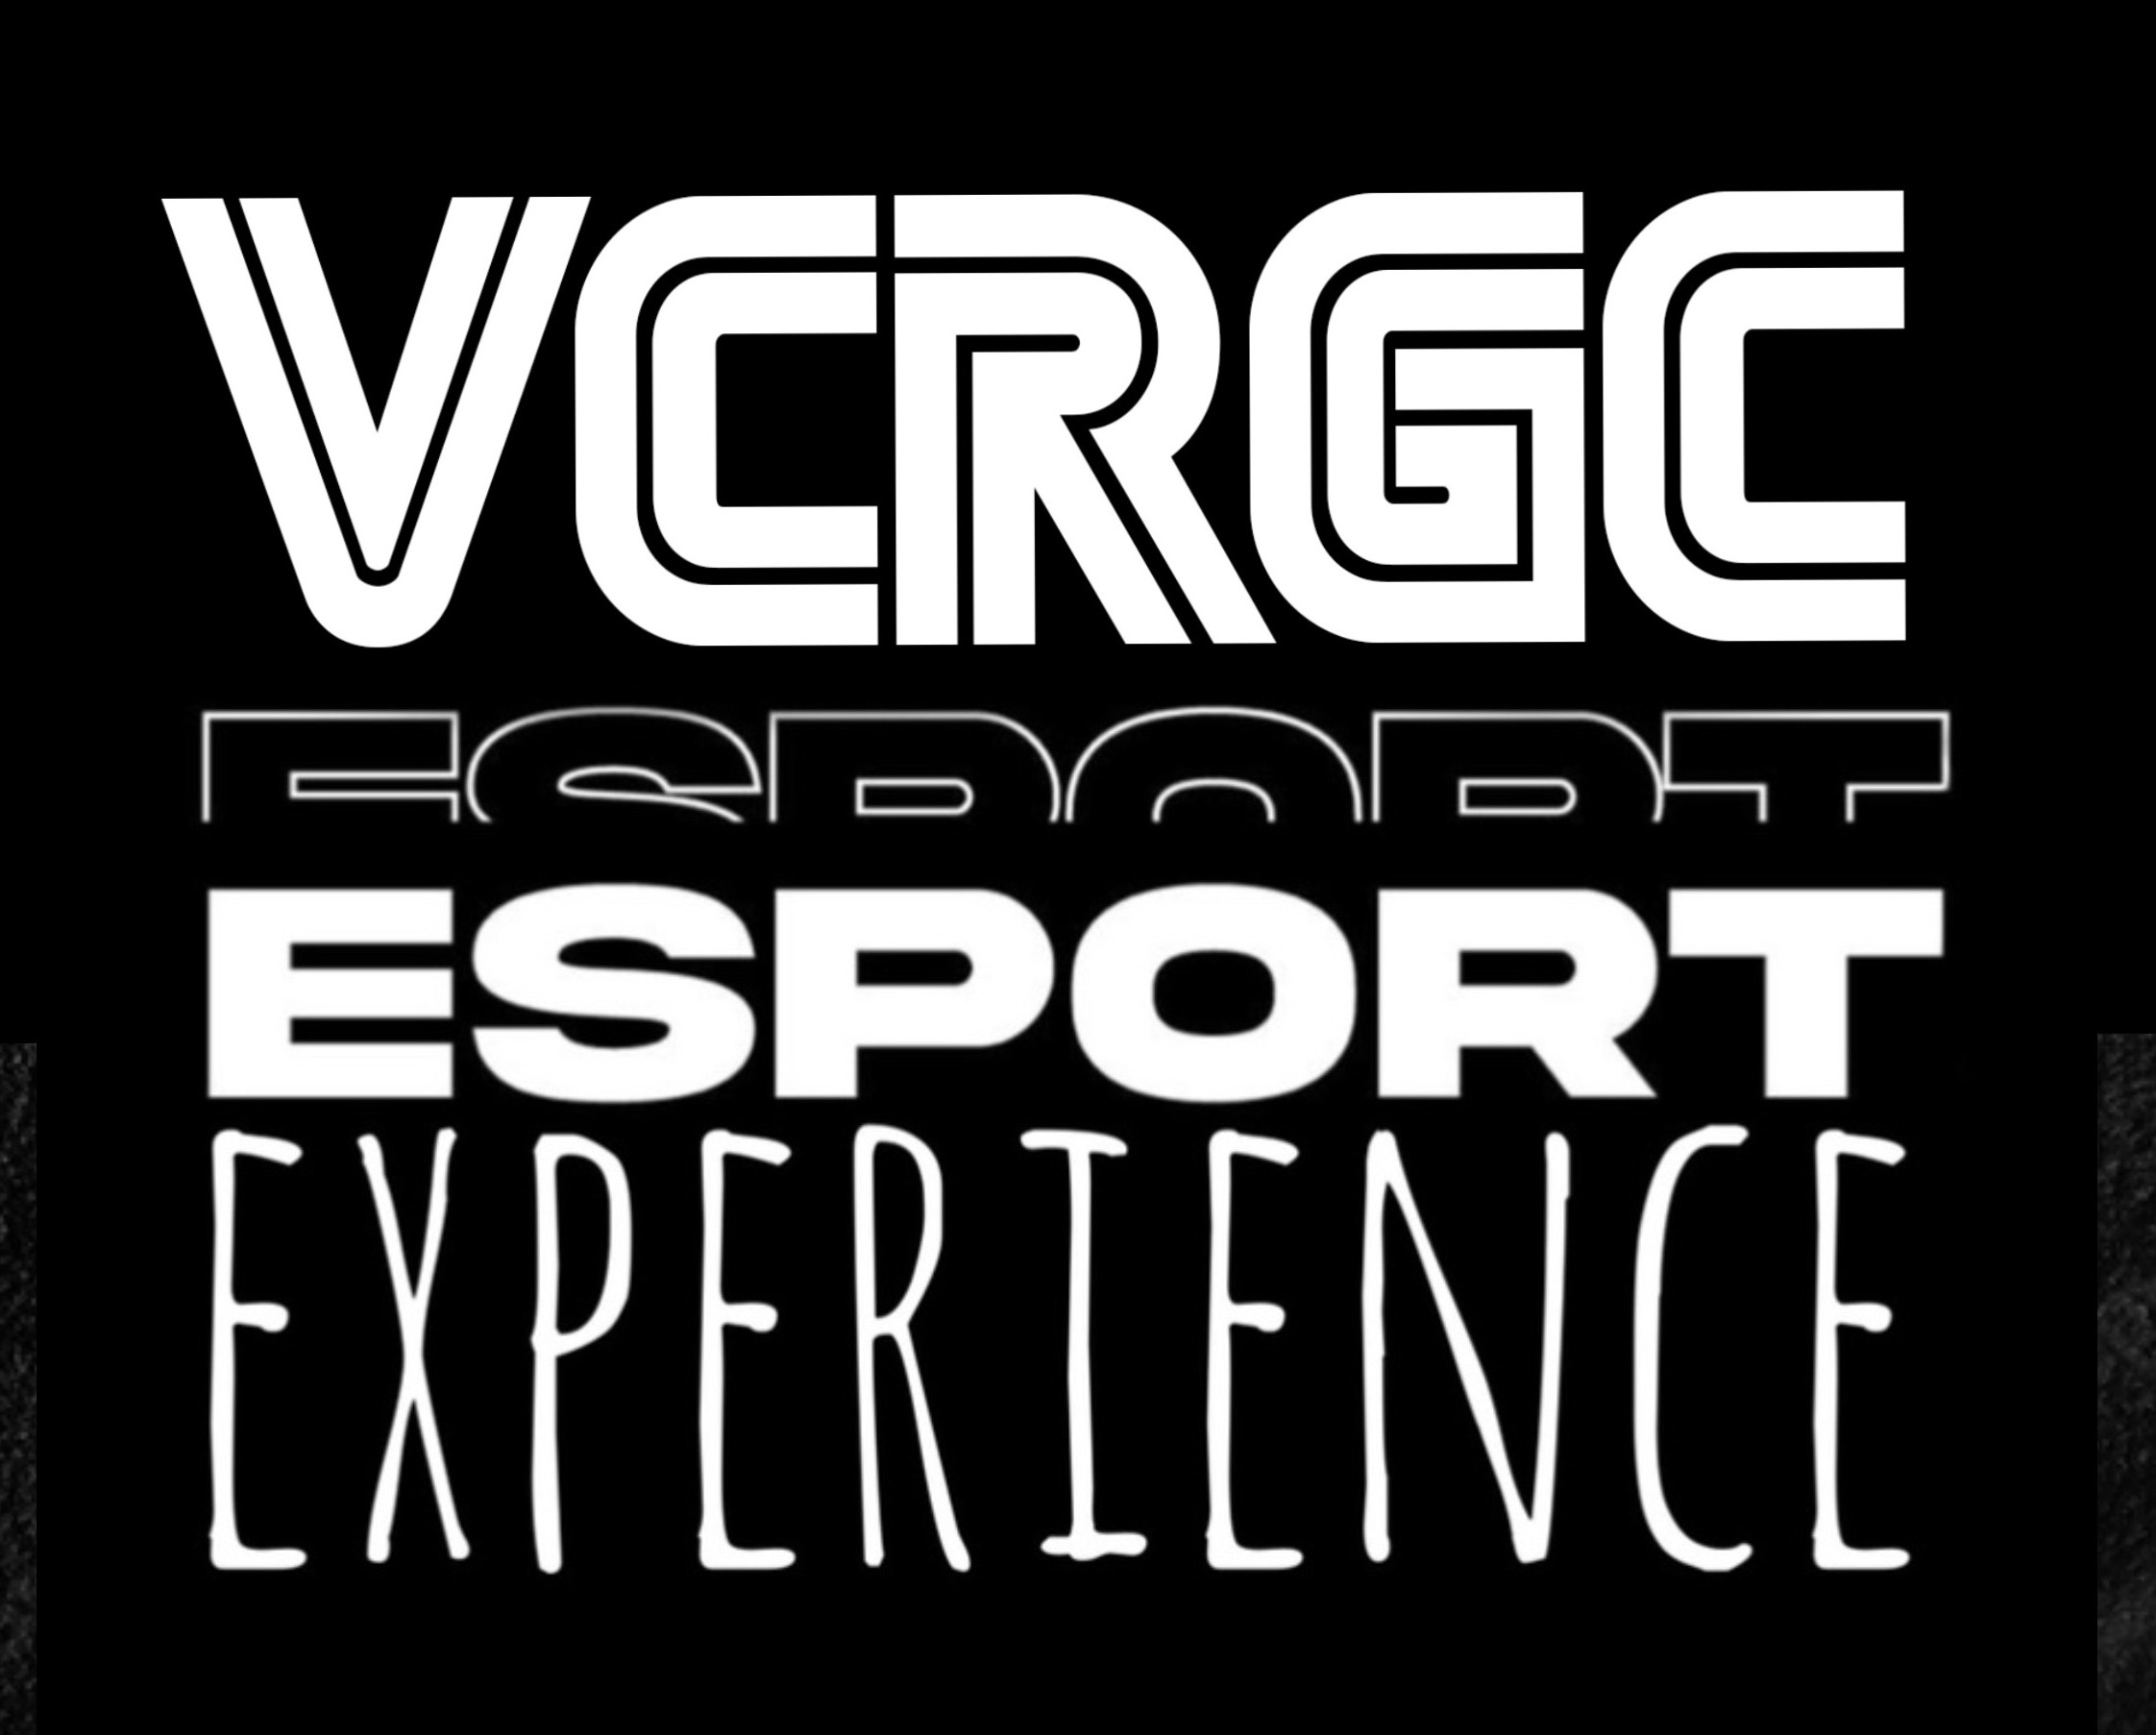 VCRGC E-sports Experience